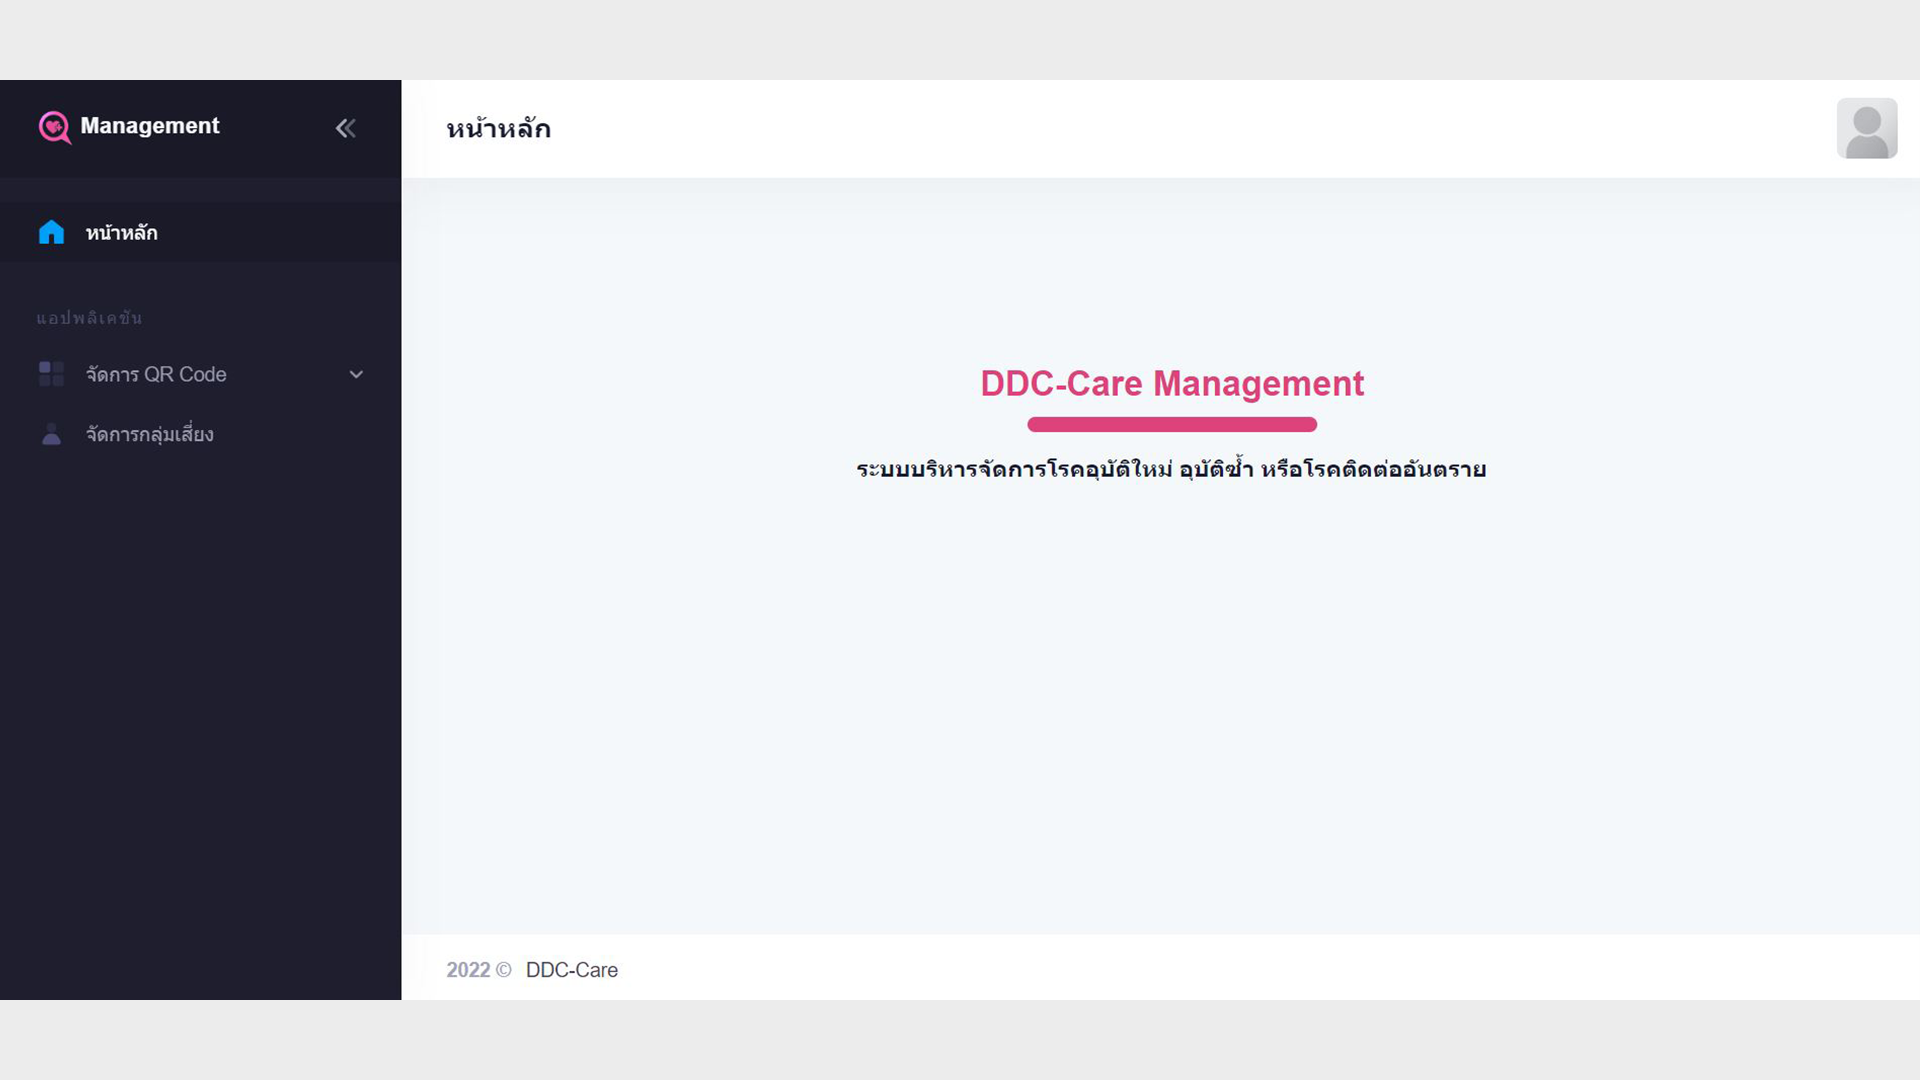 DDC-Care Management